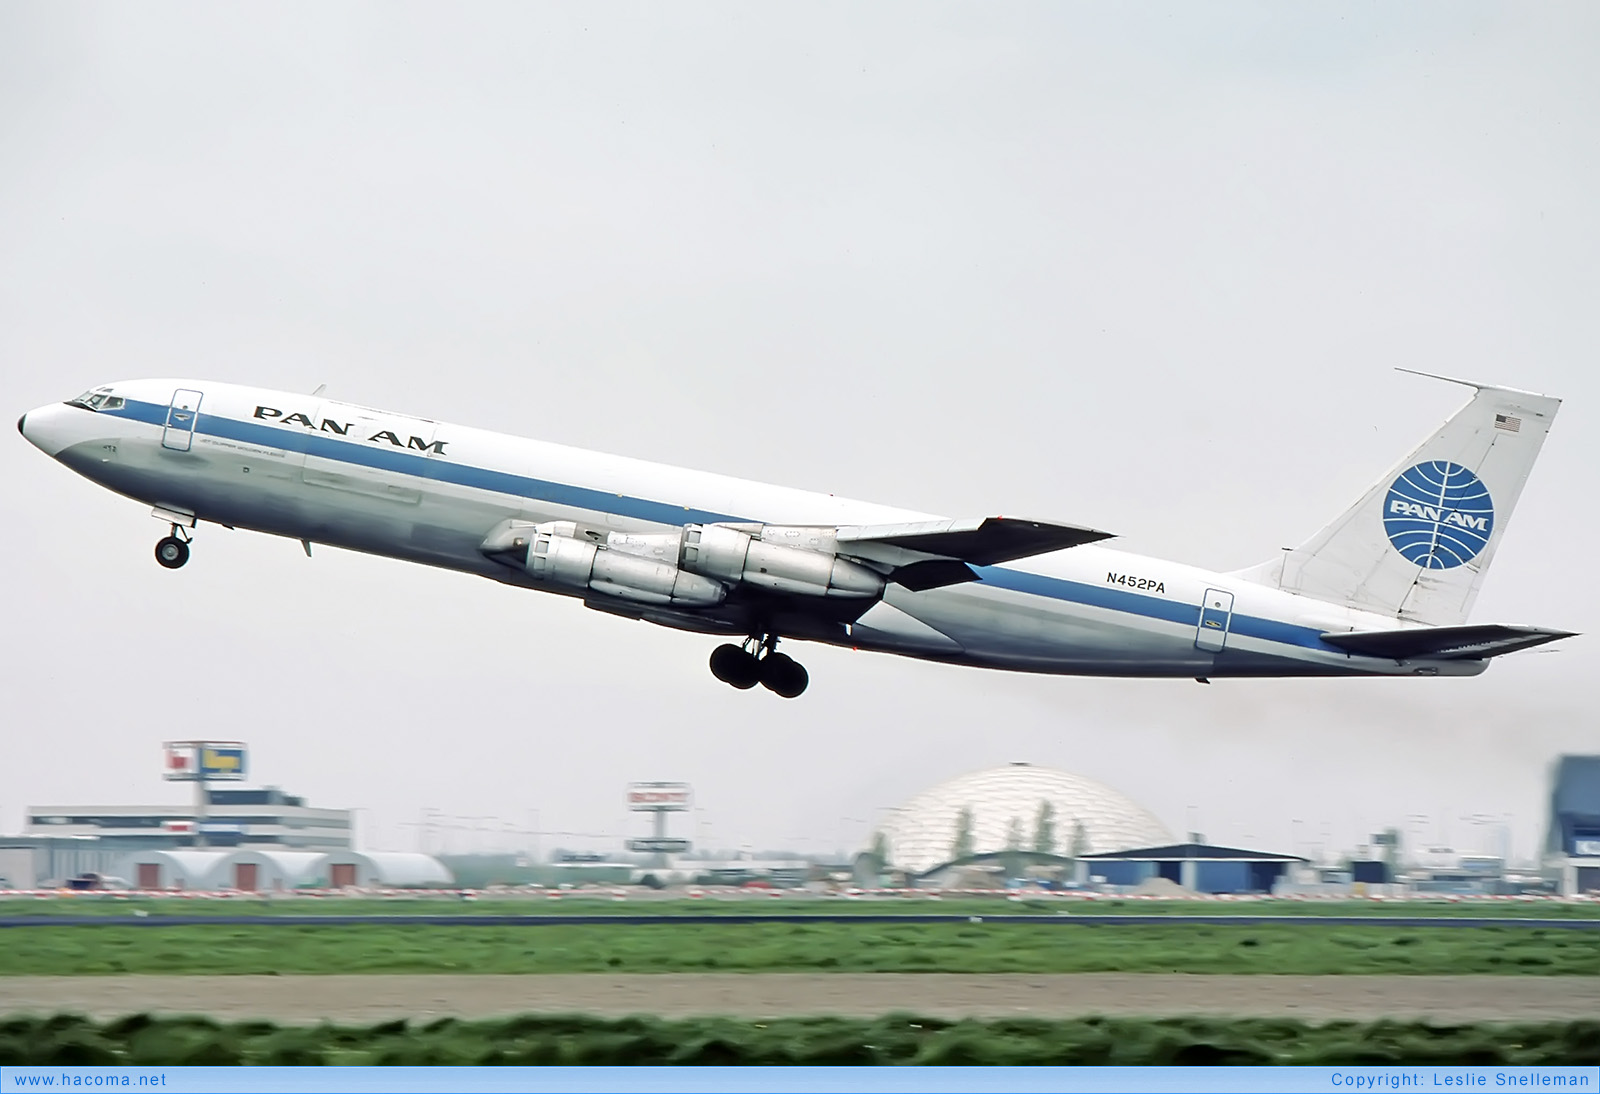 Foto von N452PA - Pan Am Clipper Golden Fleece - Flughafen Schiphol - 30.04.1977